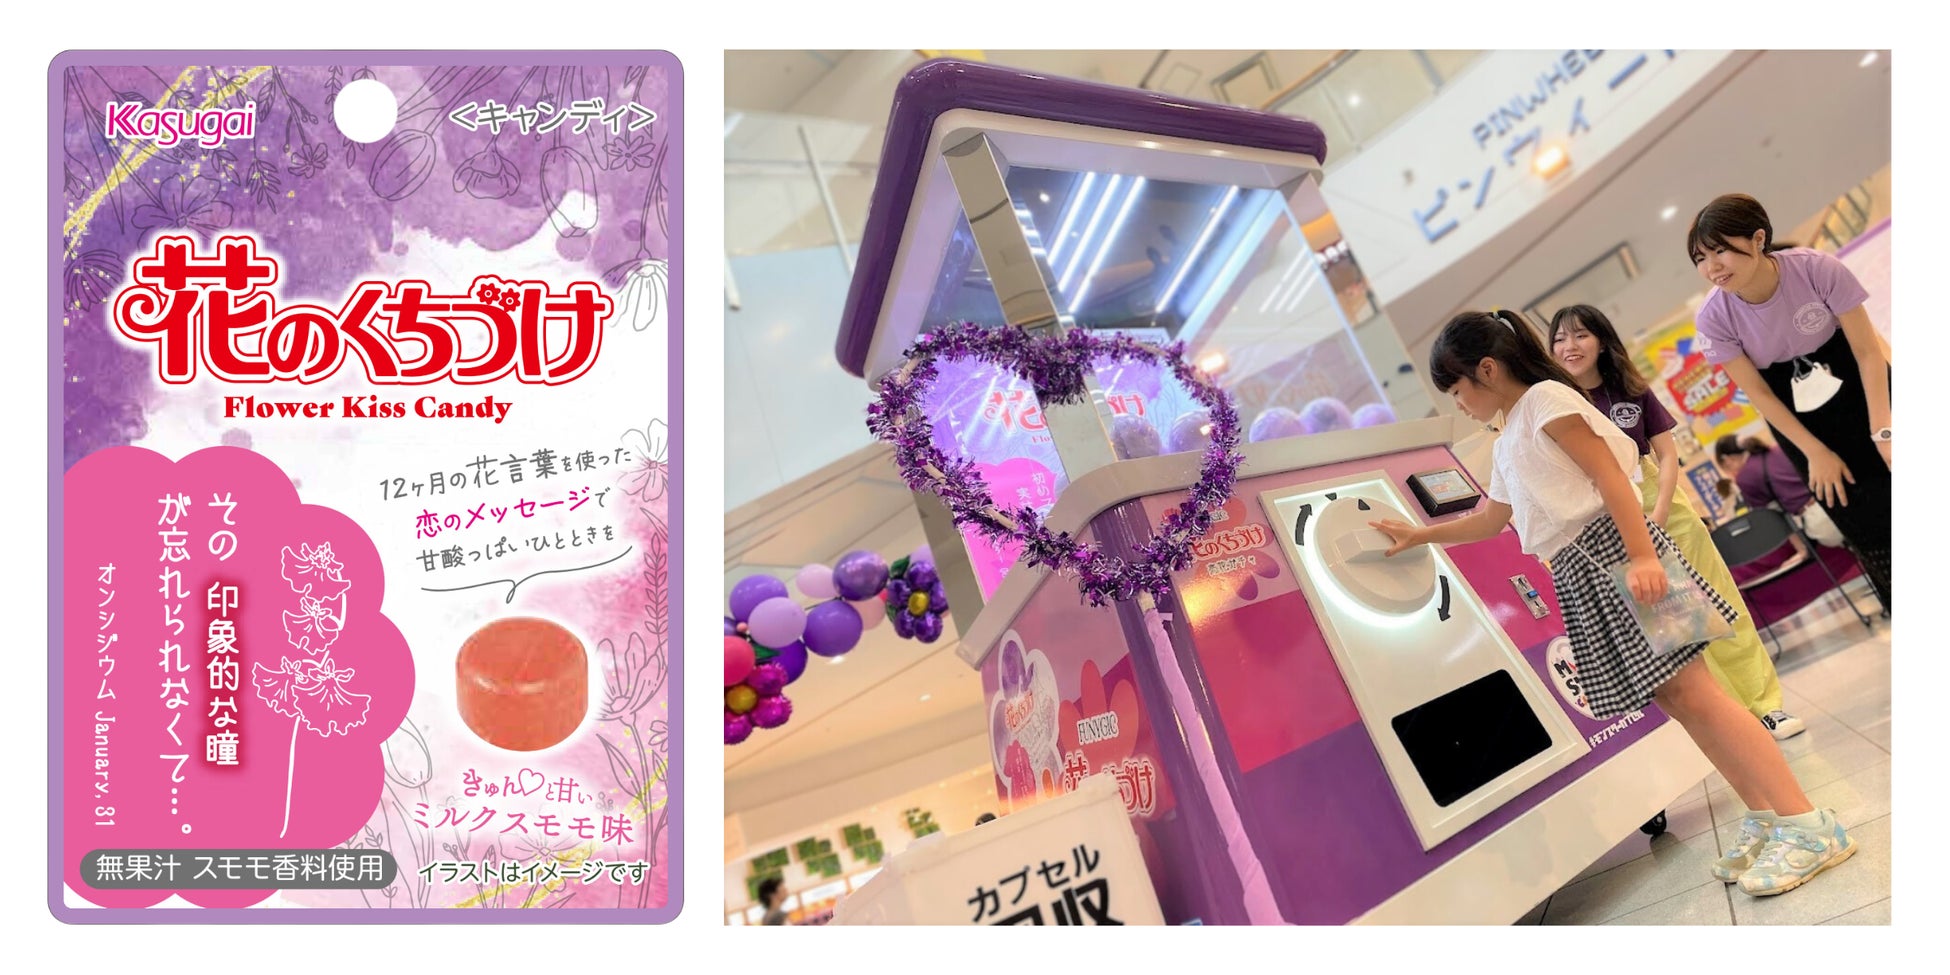 武庫川女子大学との産学連携プロジェクト！「花のくちづけ×SDGs」をテーマにしたイベントを開催